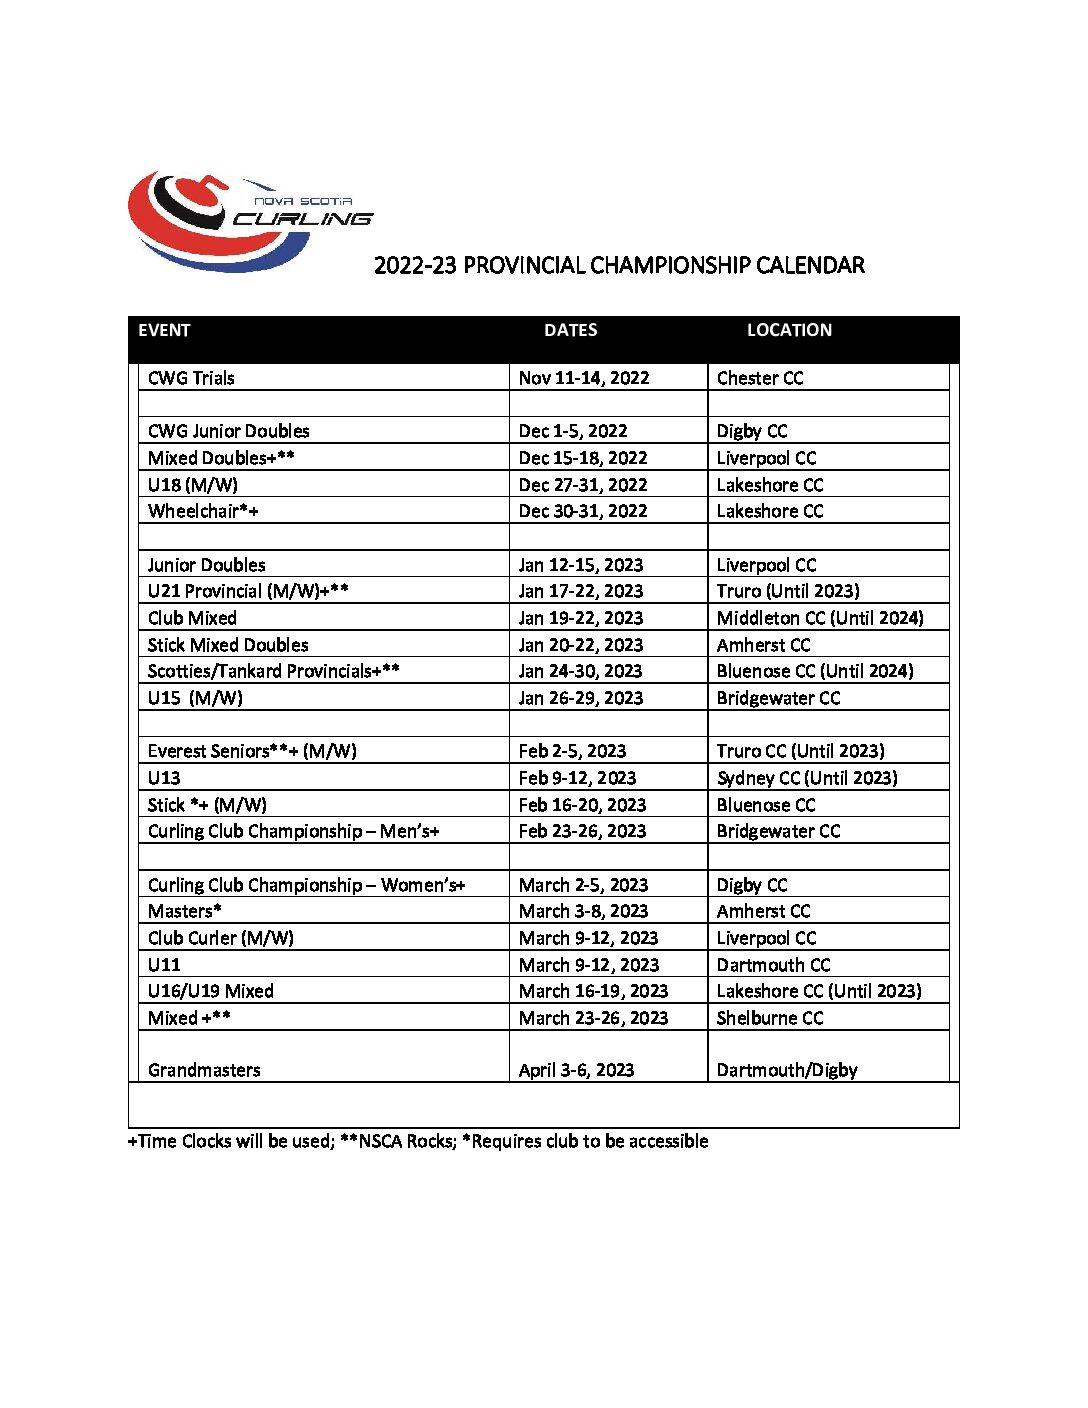 Championship Calendar Nova Scotia Curling Association